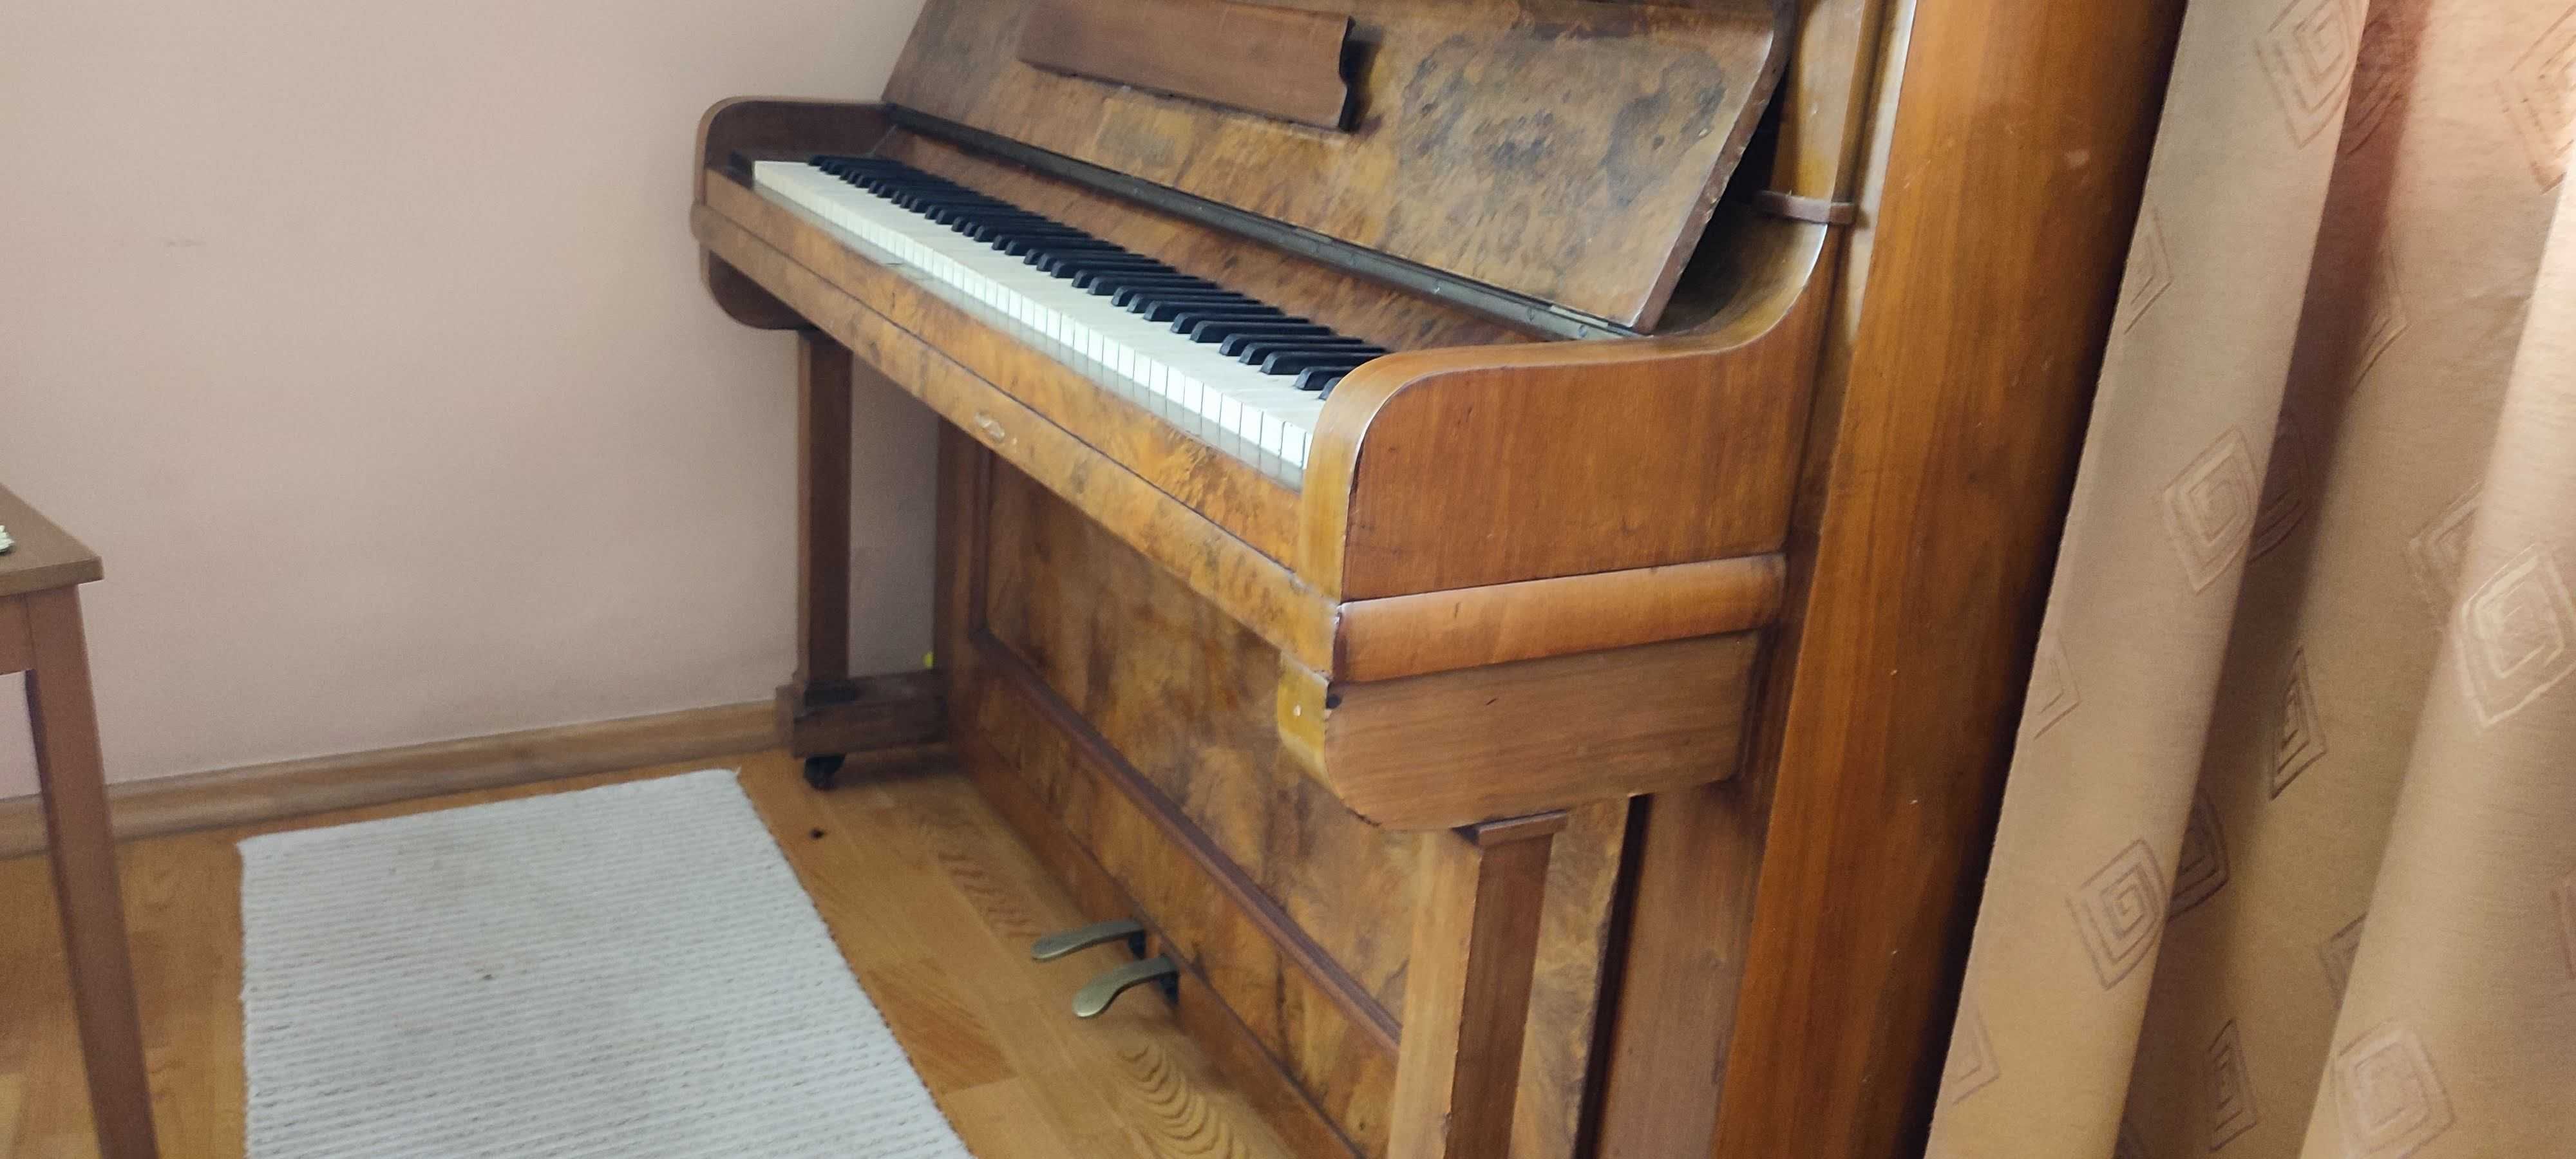 Sprzedam pianino Malena do dekoracji wnętrz. Bez możliwości strojenia.